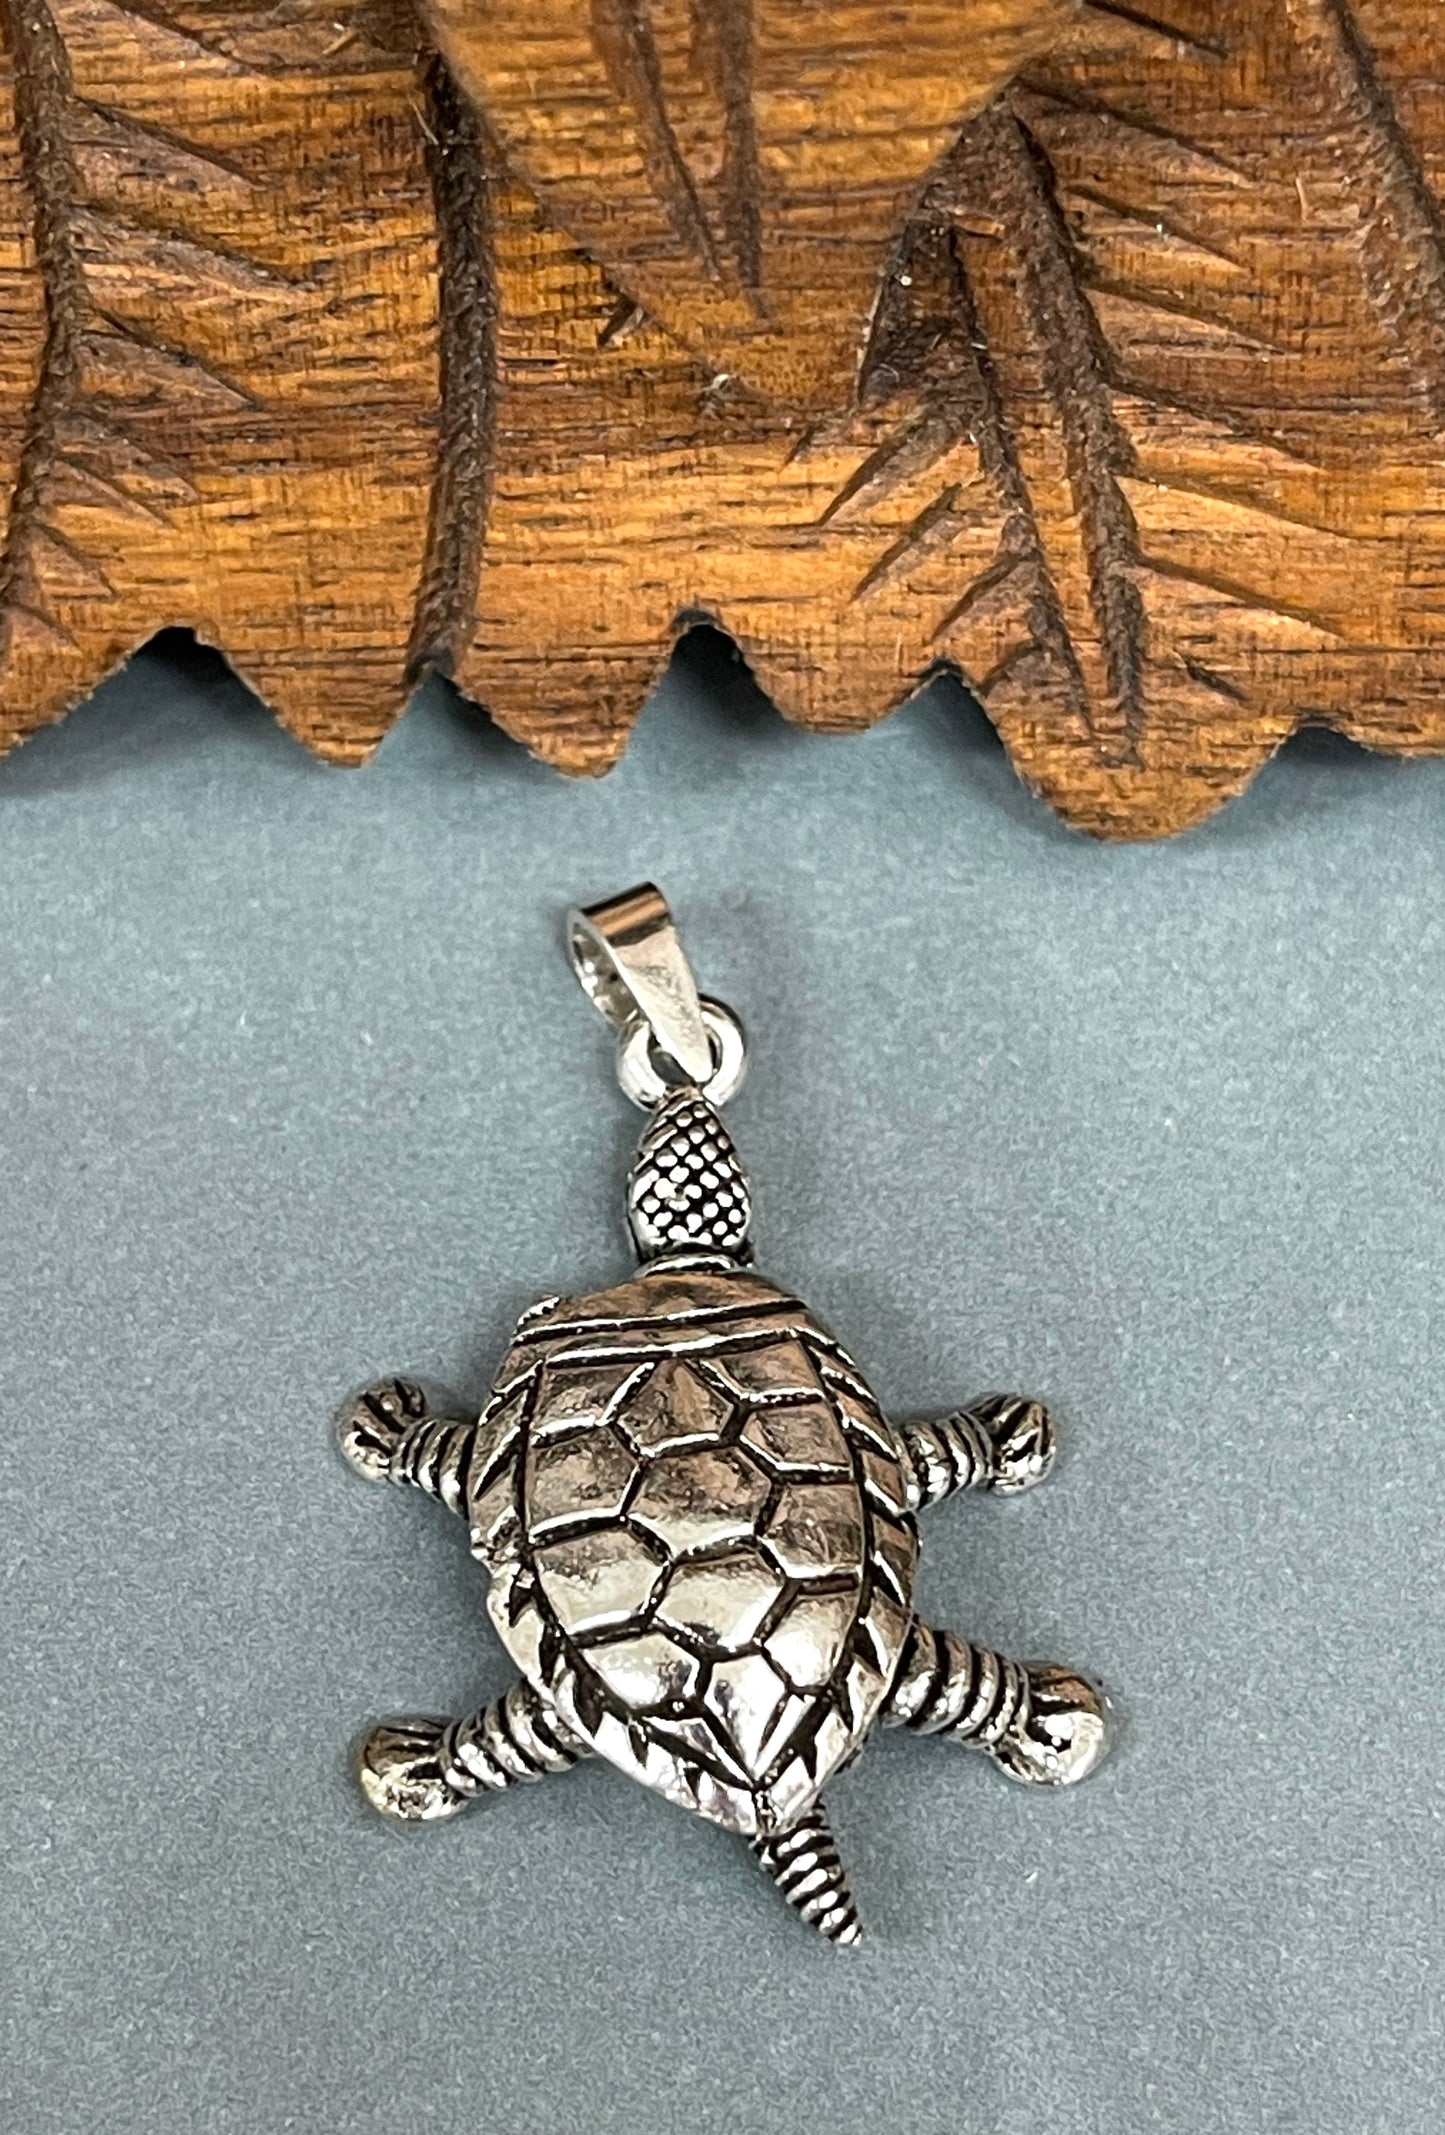 Articulating Turtle Pendant